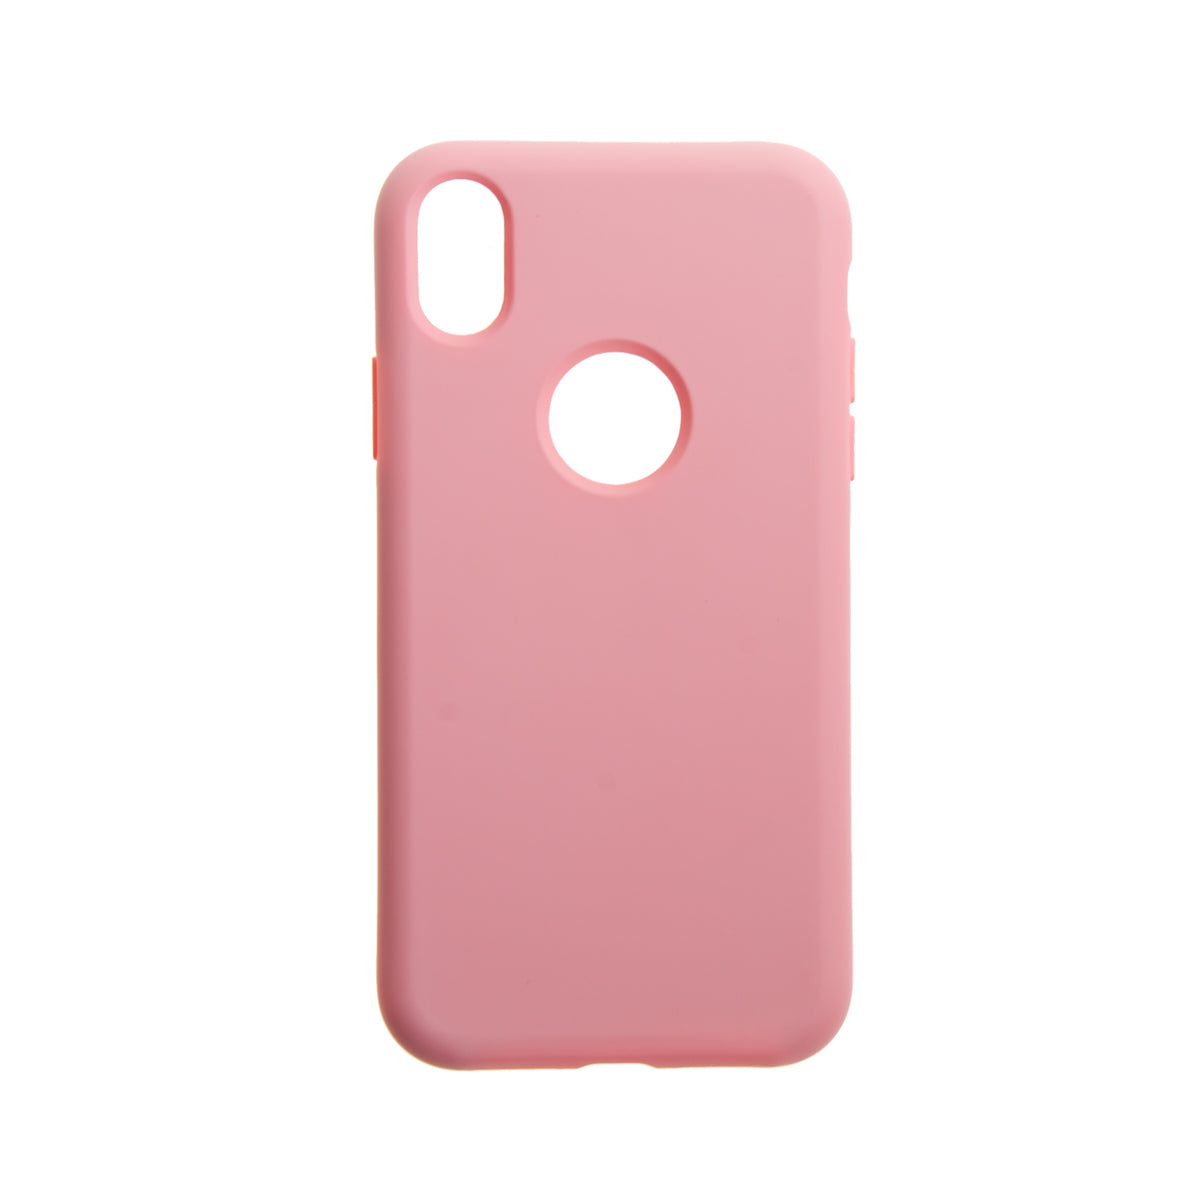 Estuche EL REY silicon rosado  iphone xs max